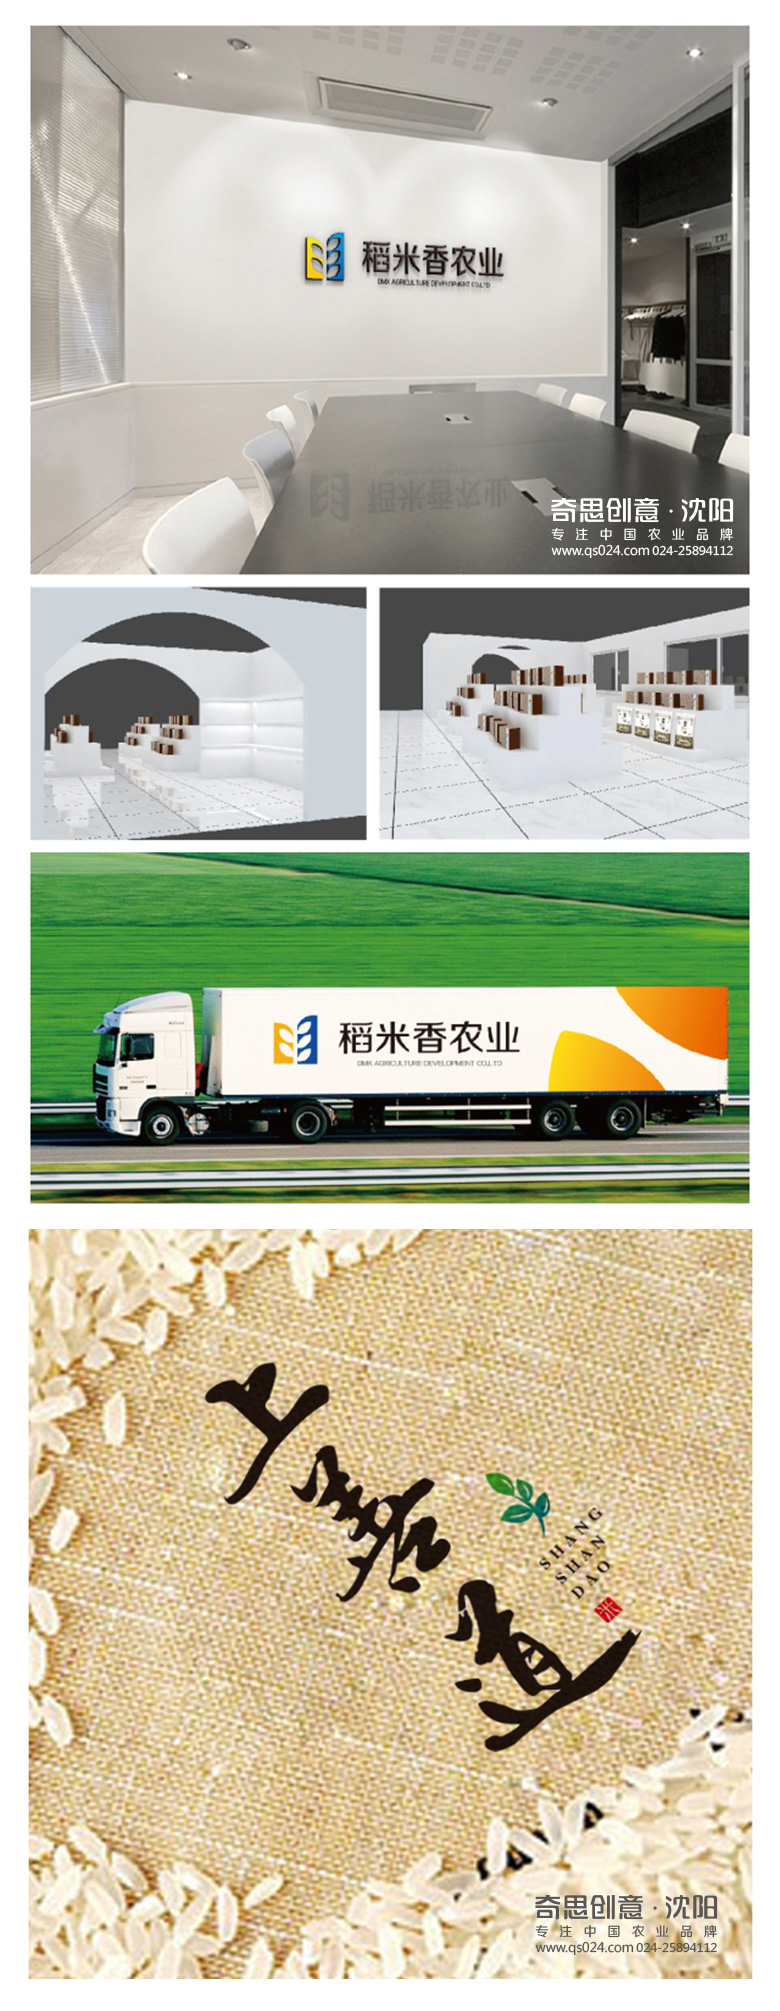 绥化稻米香农业发展有限公司,大米标识包装设计,大米品牌VI设计